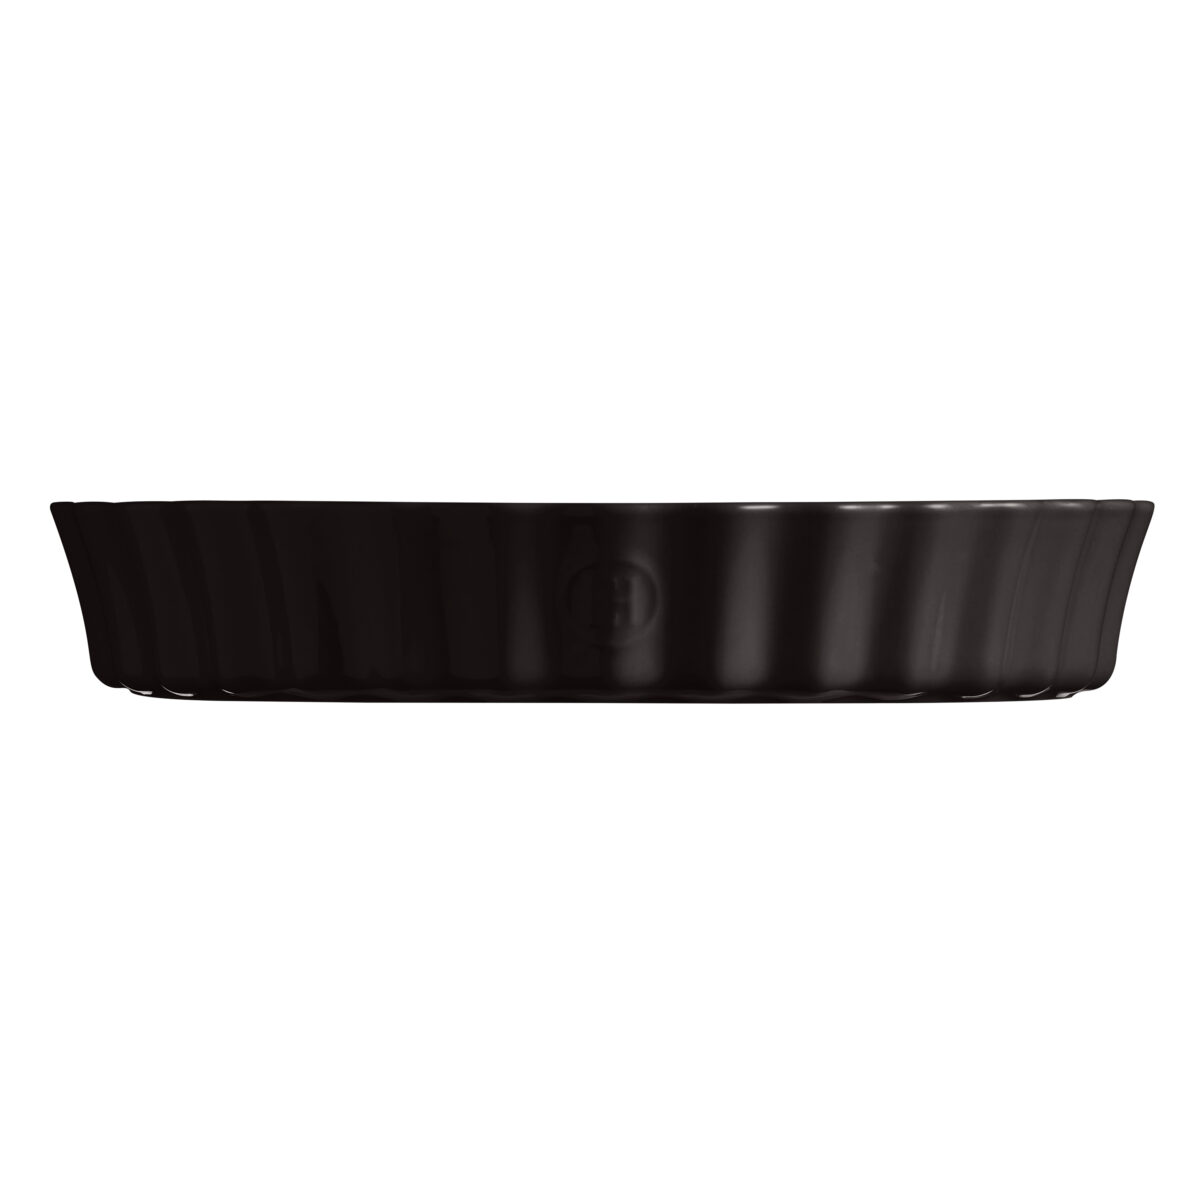 Керамична форма за тарт EMILE HENRY DEEP TART DISH - Ø 32 см, цвят черен